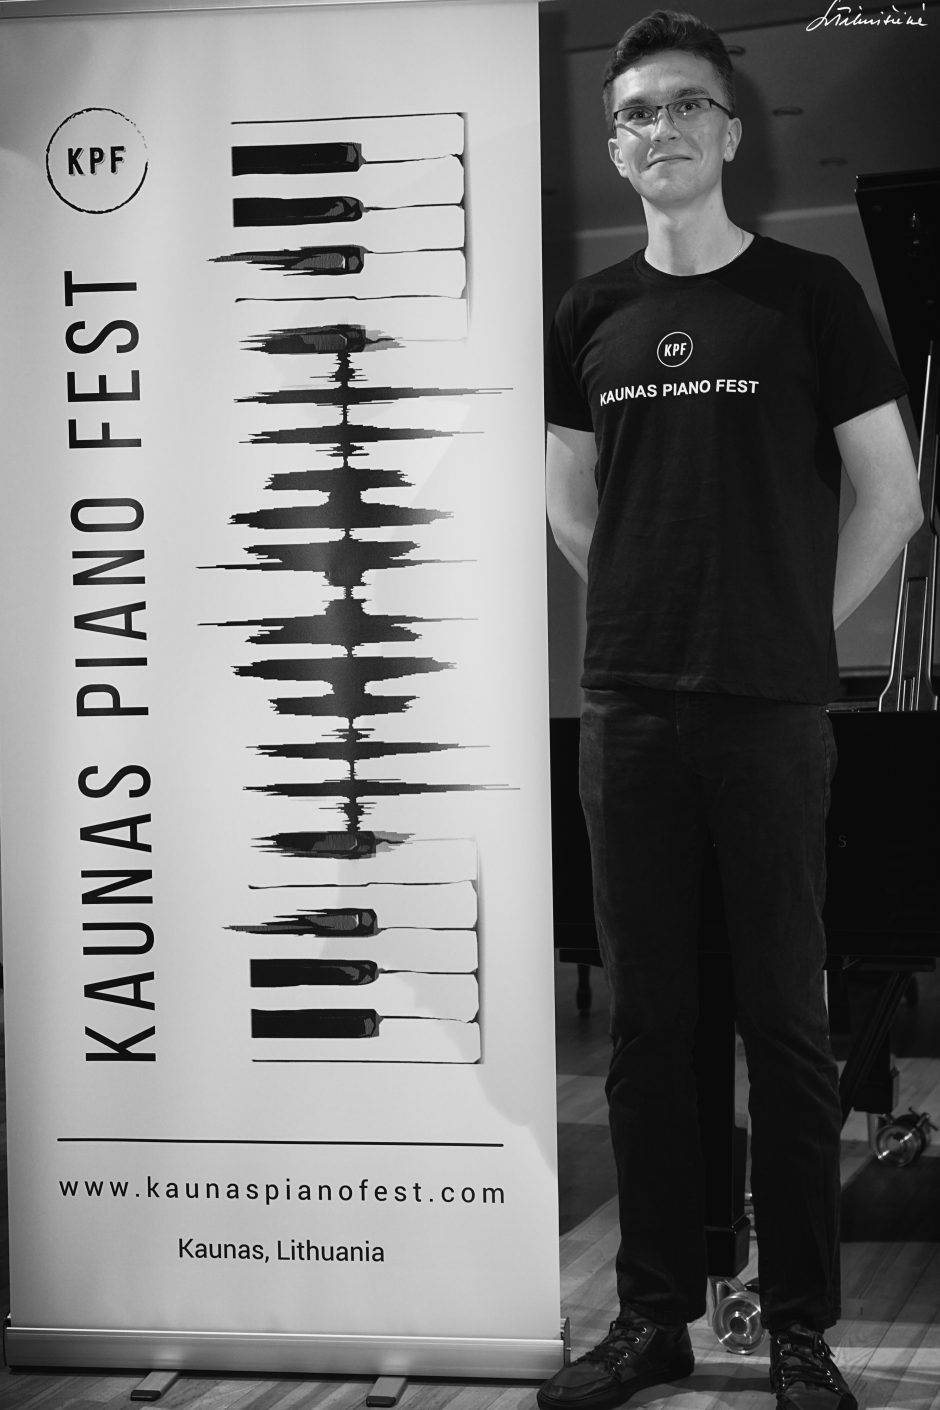 Festivalis „Kaunas Piano Fest“: tereikia ateiti ir išgirsti